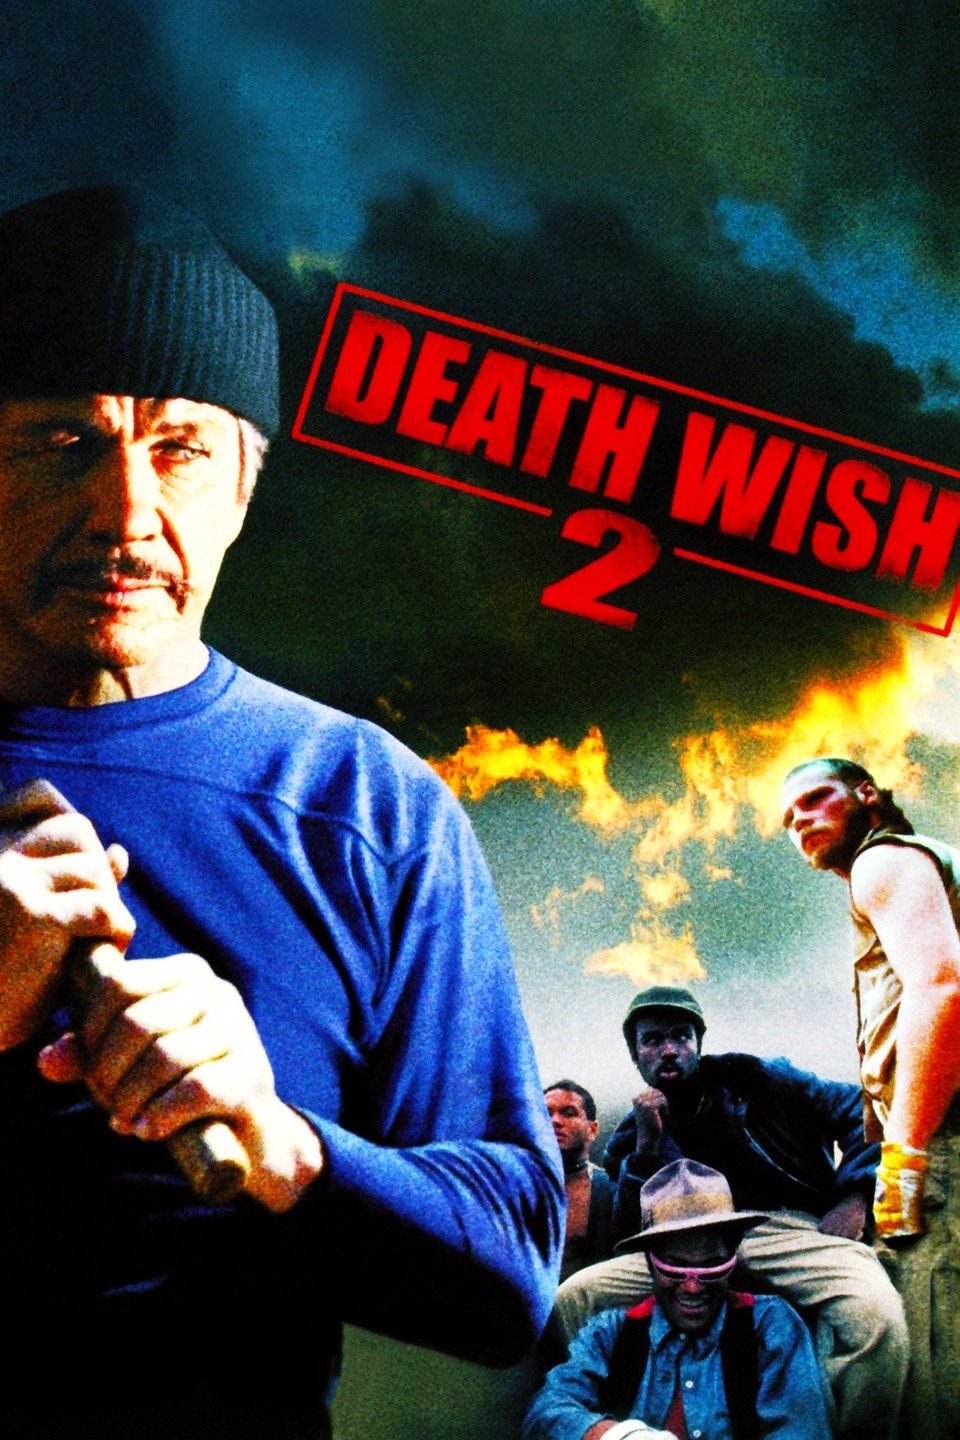 1982 Death Wish II